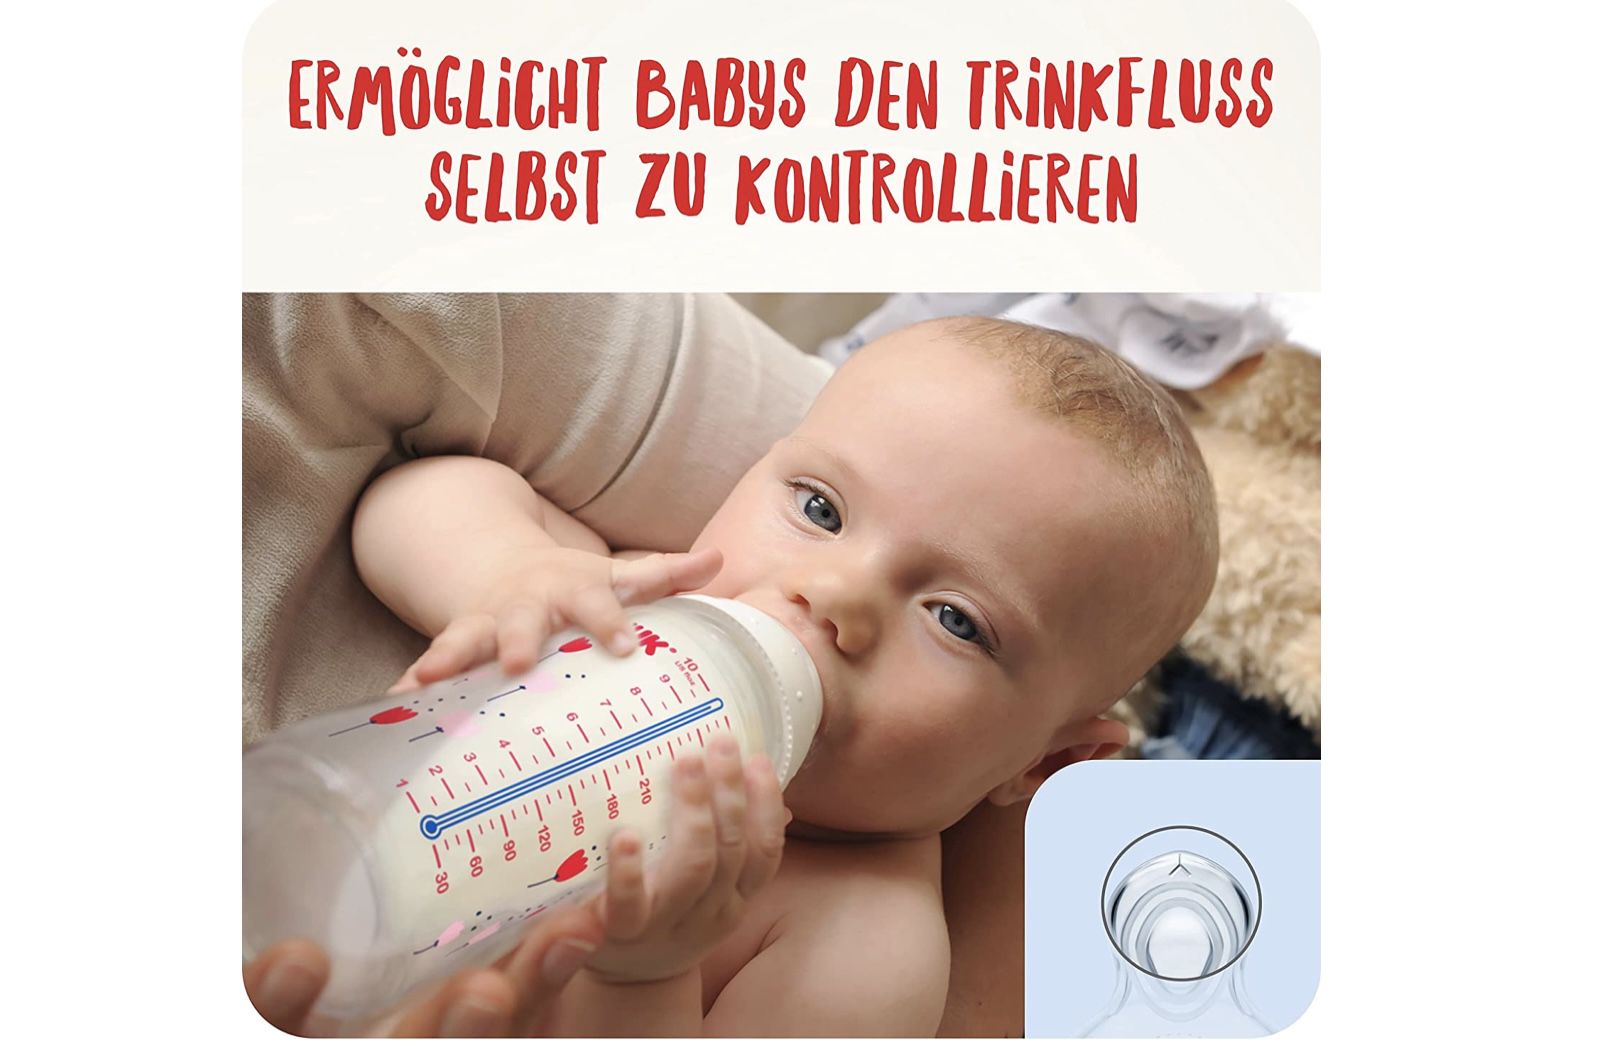 2 x NUK First Choice+ Flow Control Trinksauger für Babyflaschen für 6,70€ (statt 10€)   Prime